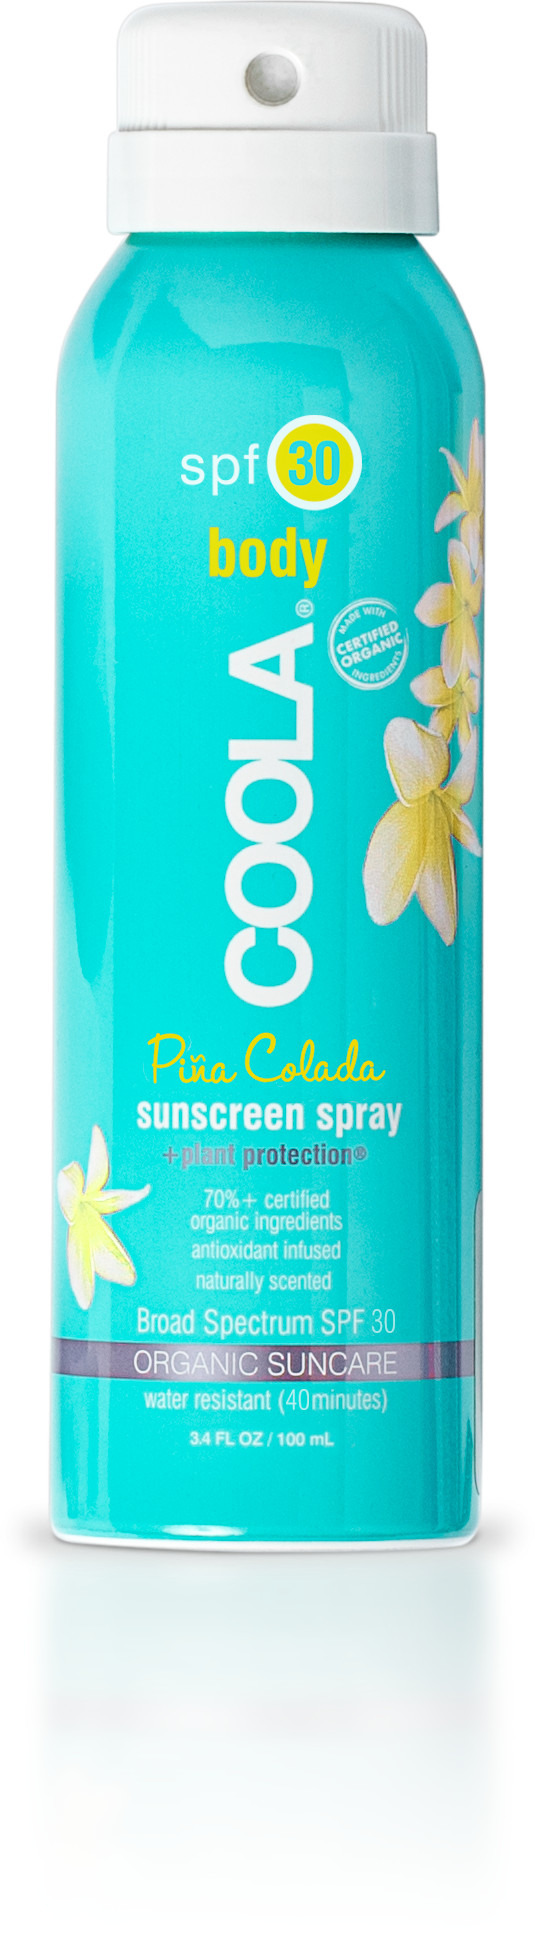 coola sunscreen pina colada